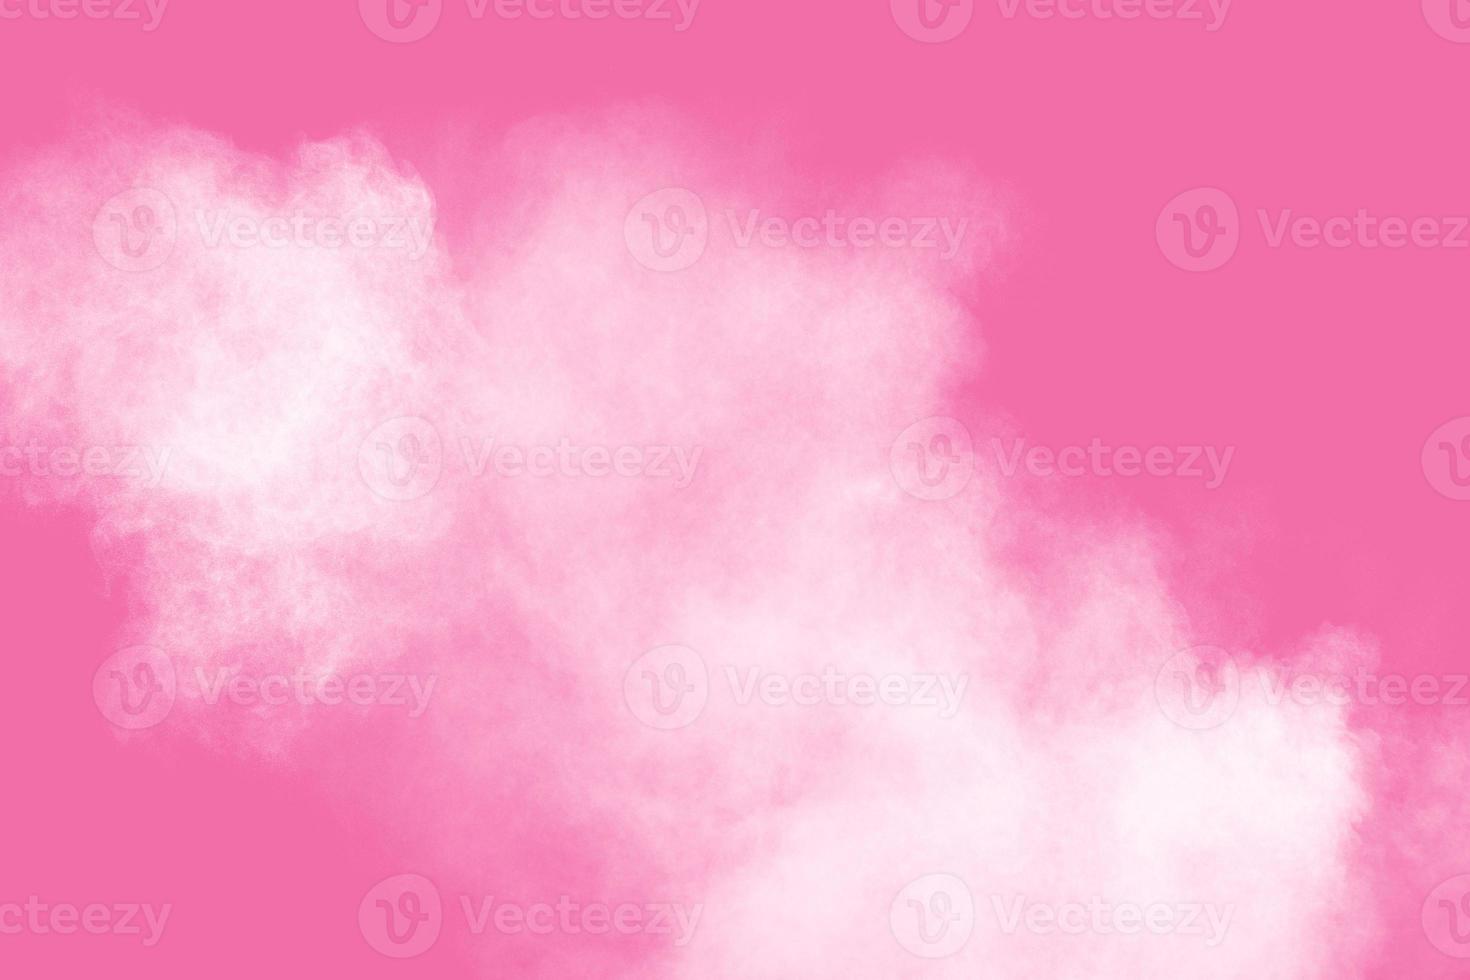 explosión de polvo blanco abstracto sobre fondo rosa. congelar el movimiento de polvo blanco salpicado. foto